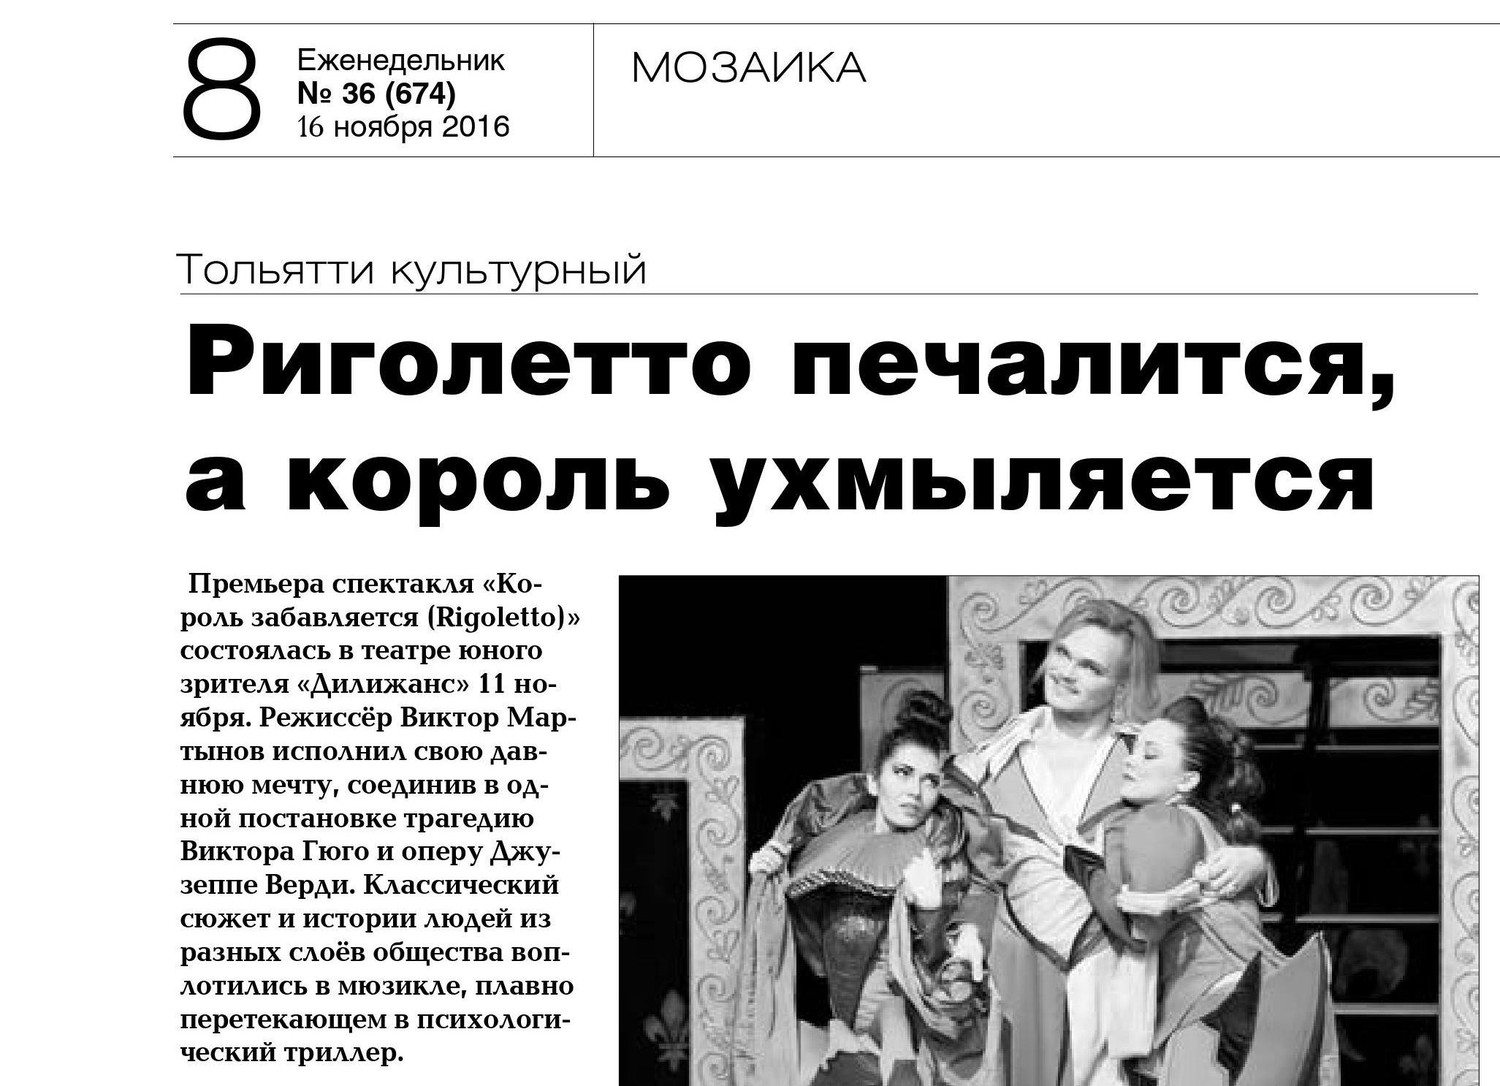 "Риголетто печалится, а король ухмыляется" Полина Плисова о премьере.